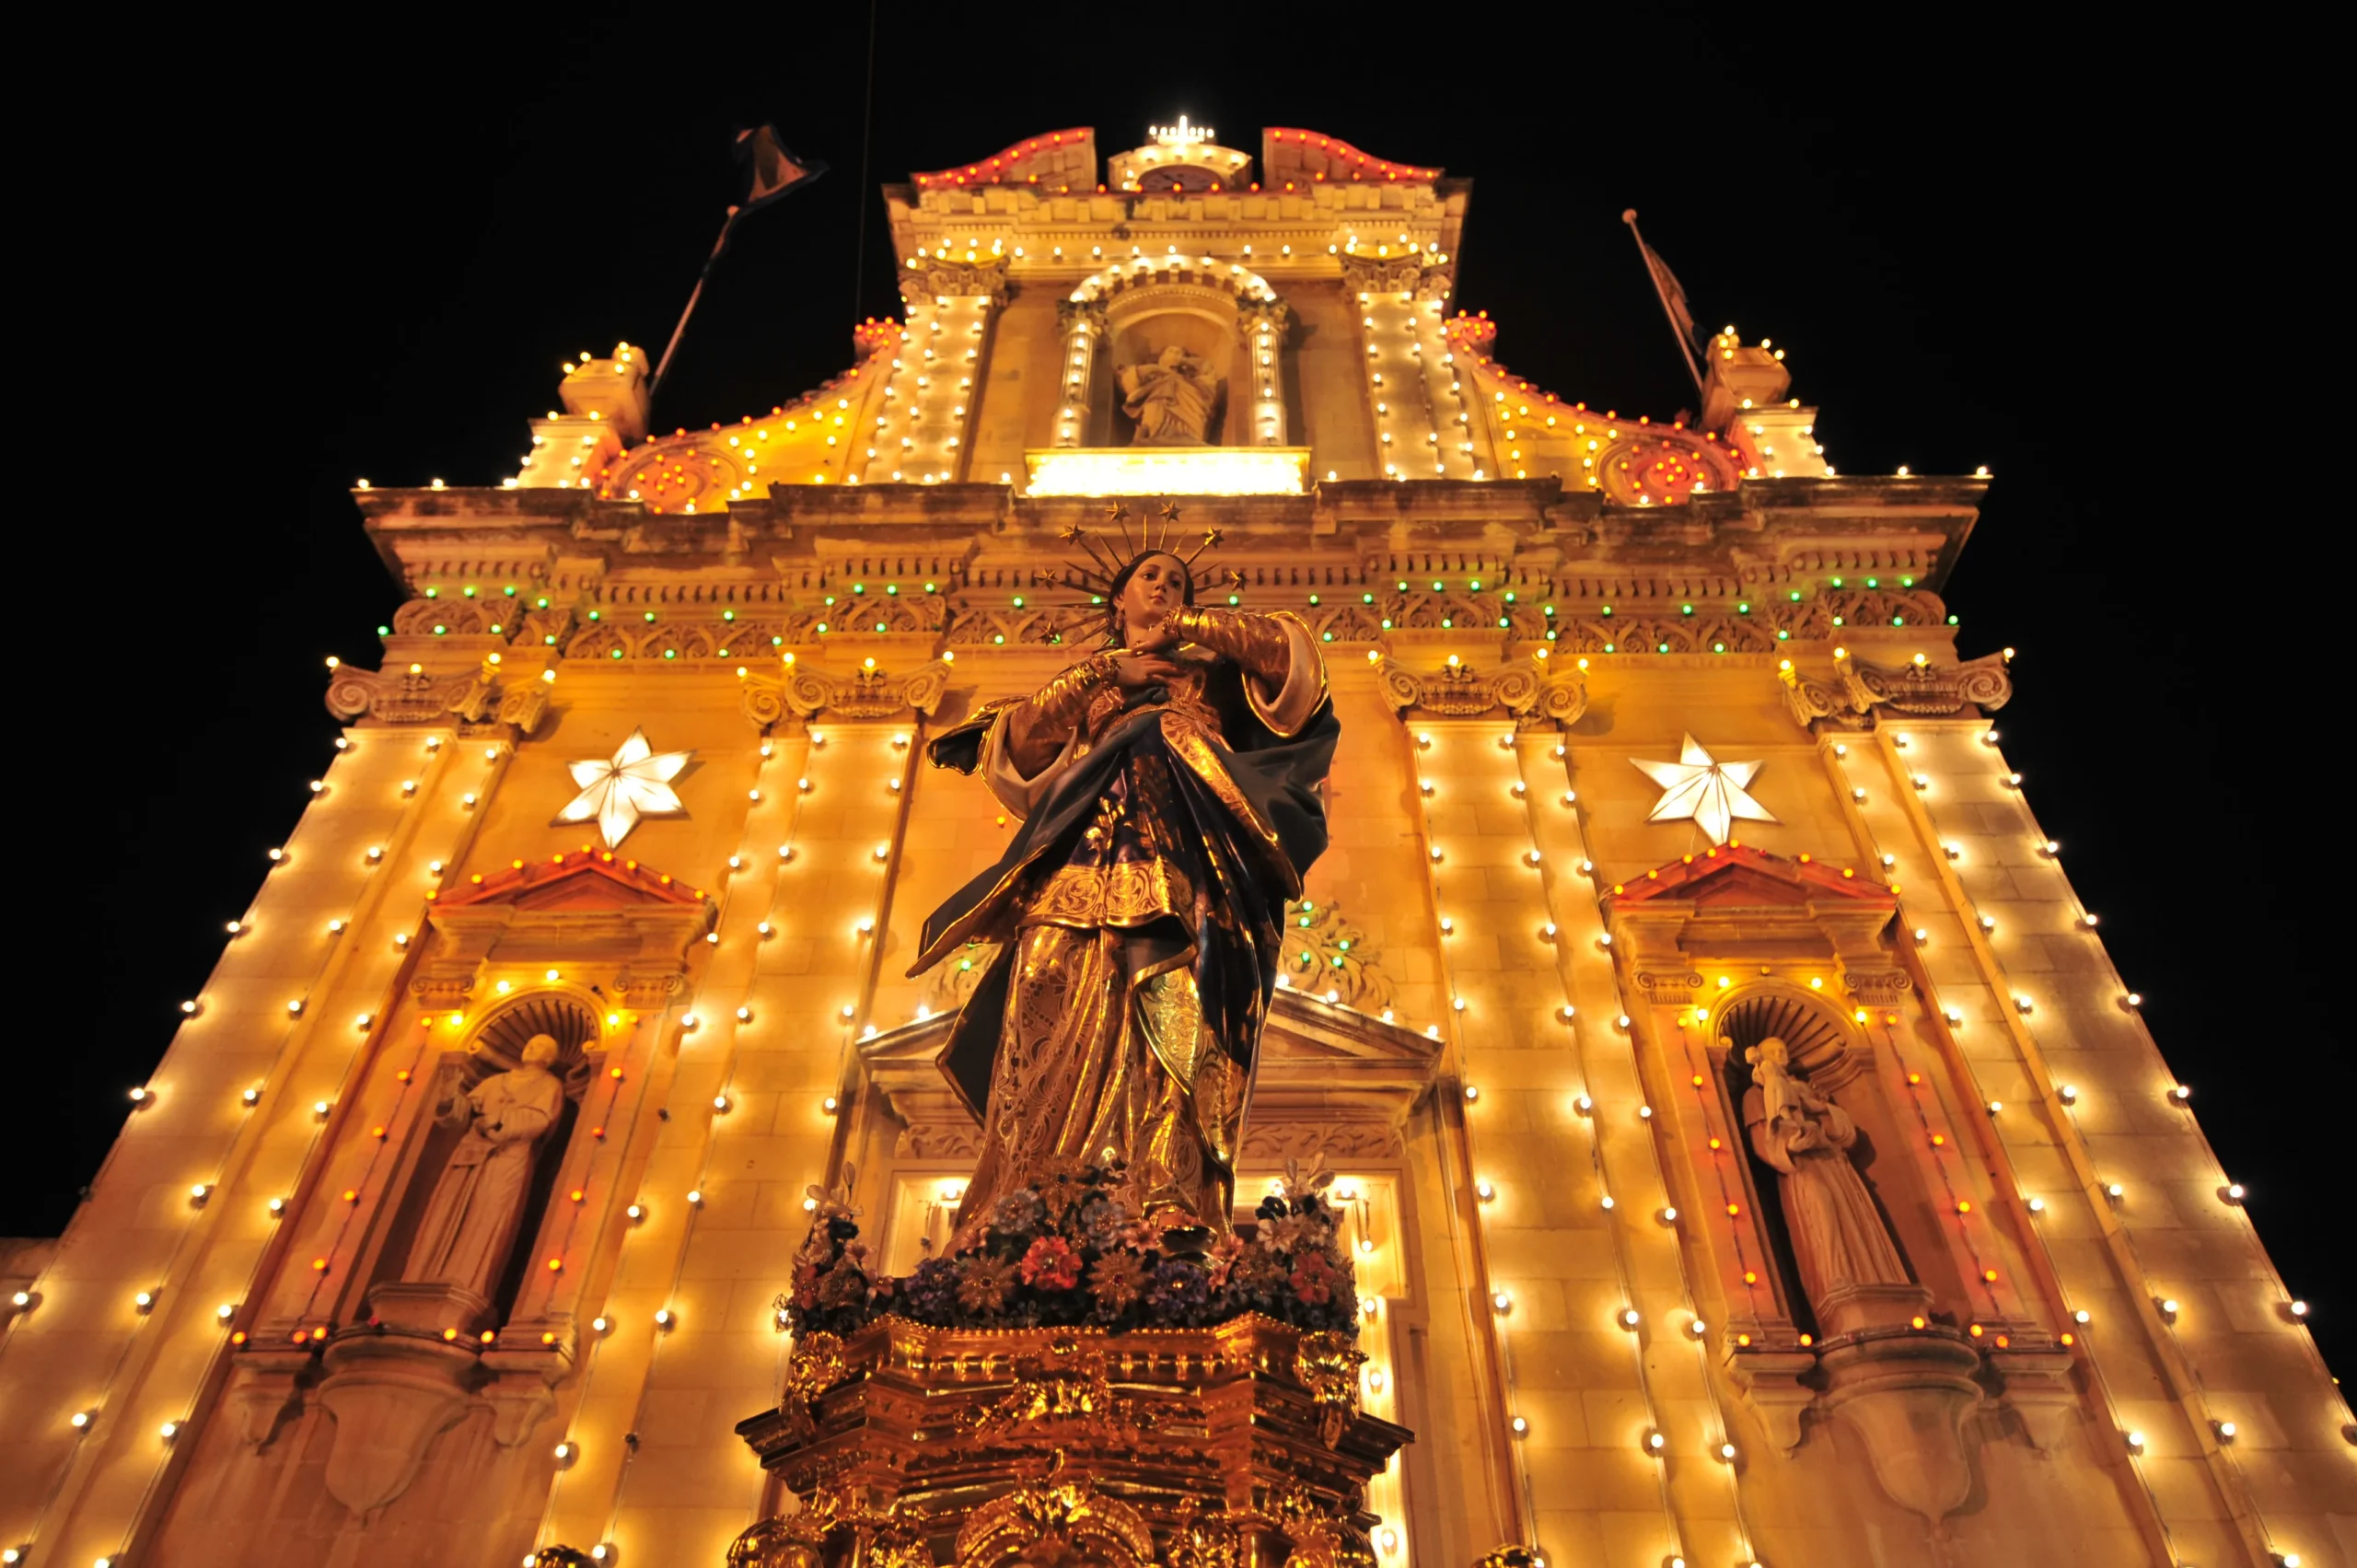 Christianity in Malta